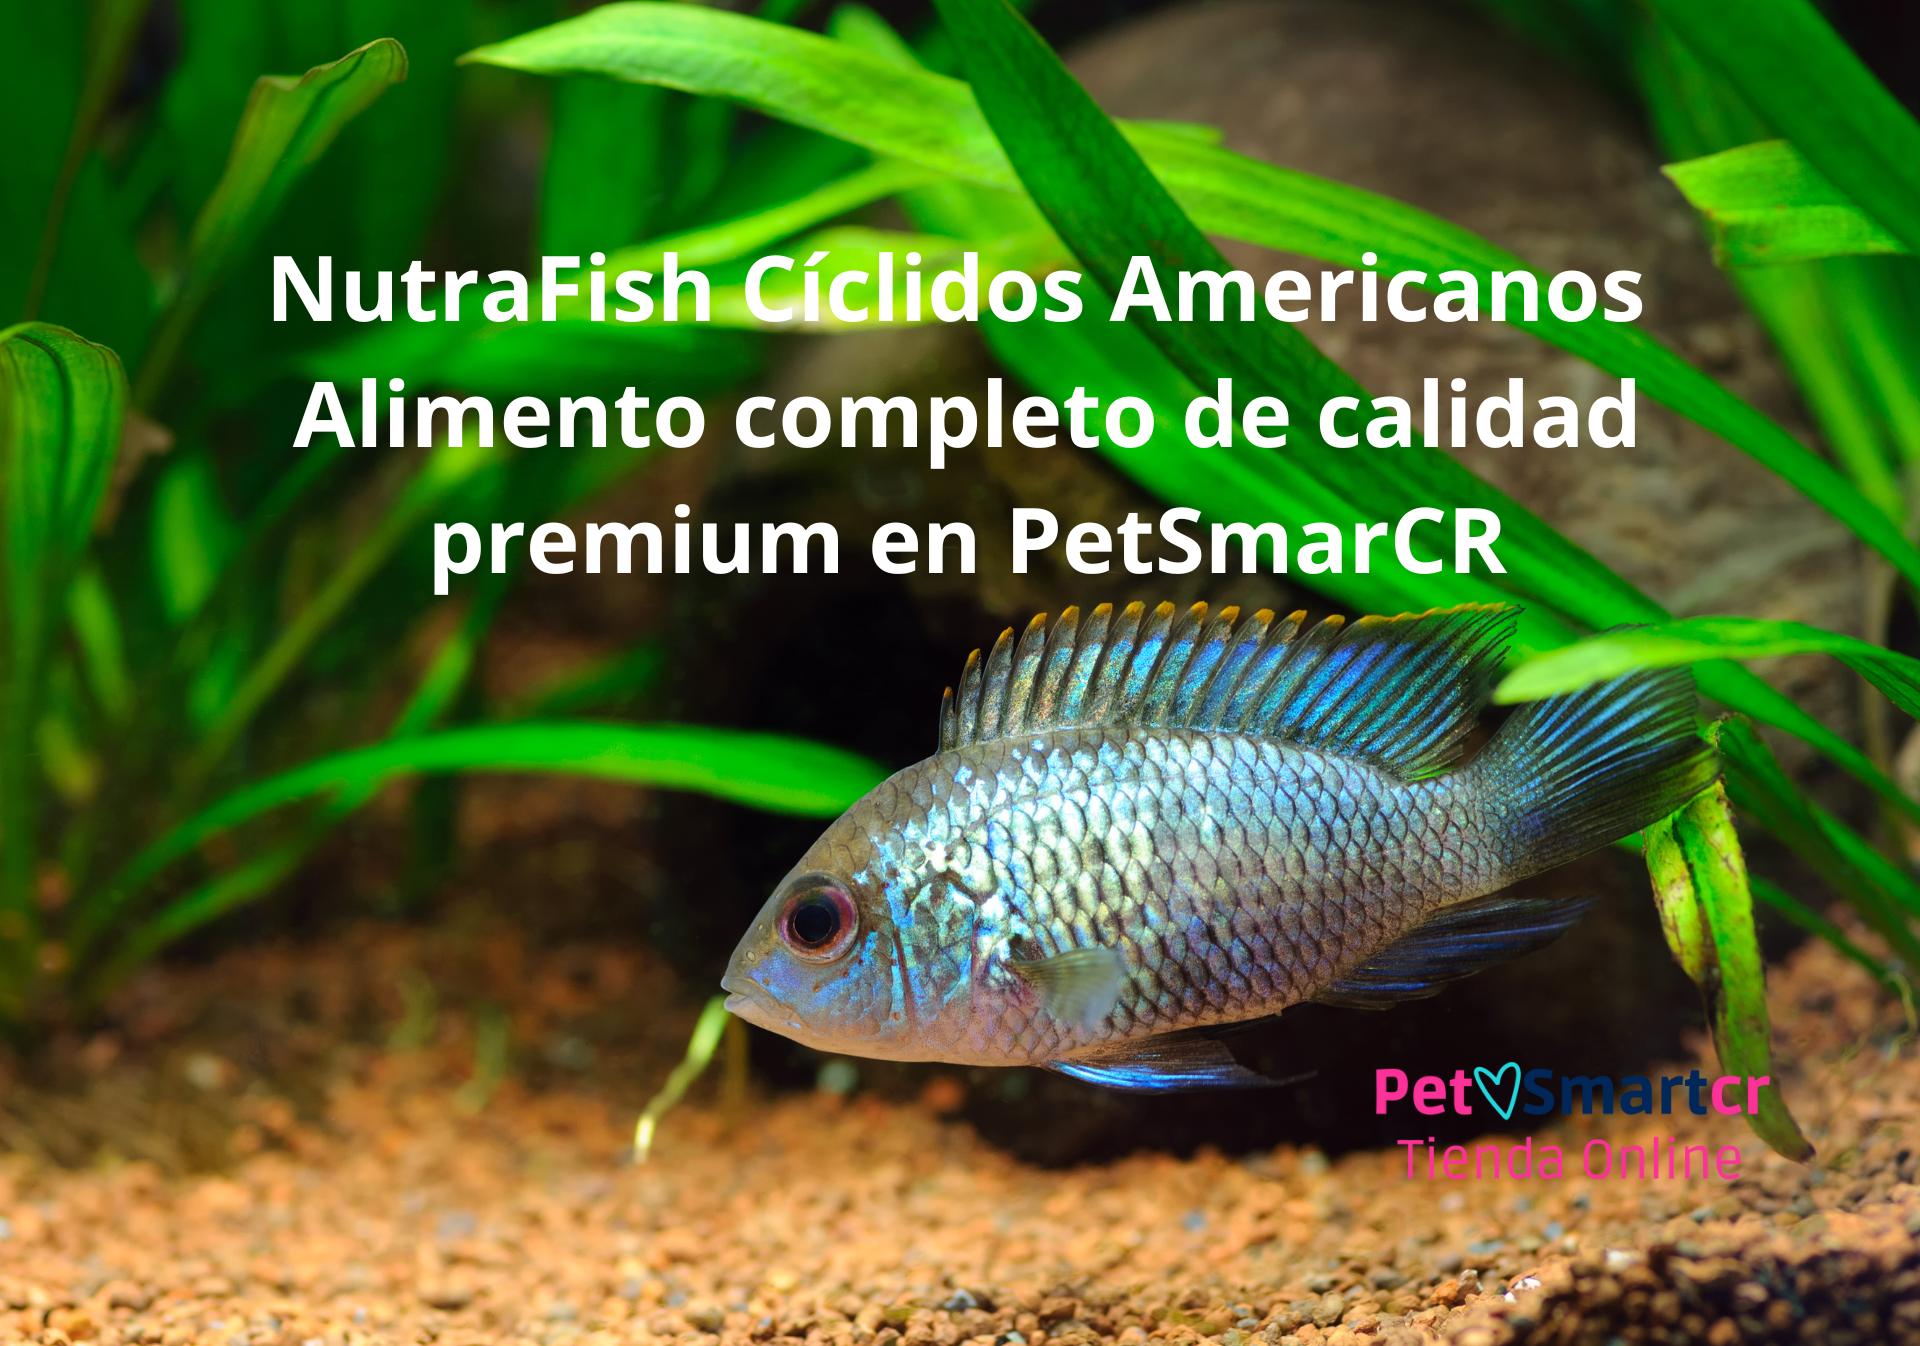 Imagen de un pez cíclido americano comiendo NutraFish cíclidos americanos